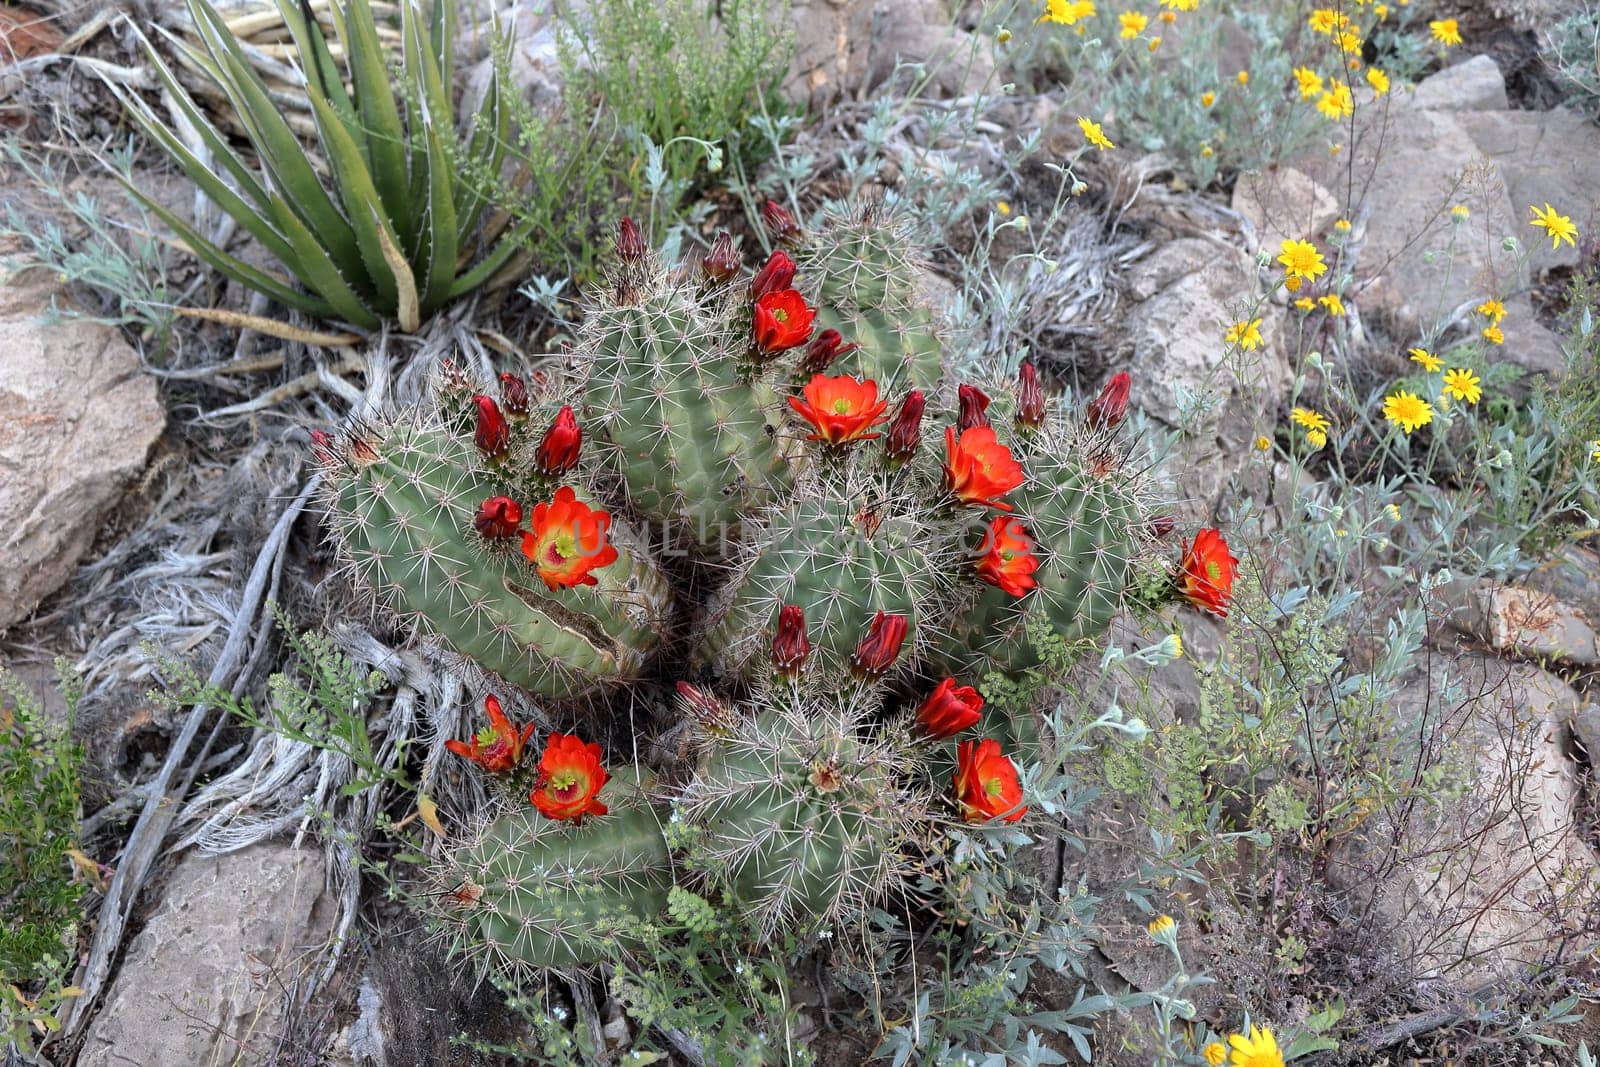 Claret Cup Cactus Echinocereus triglochidiatus flowering Texas, USA. by Marcielito